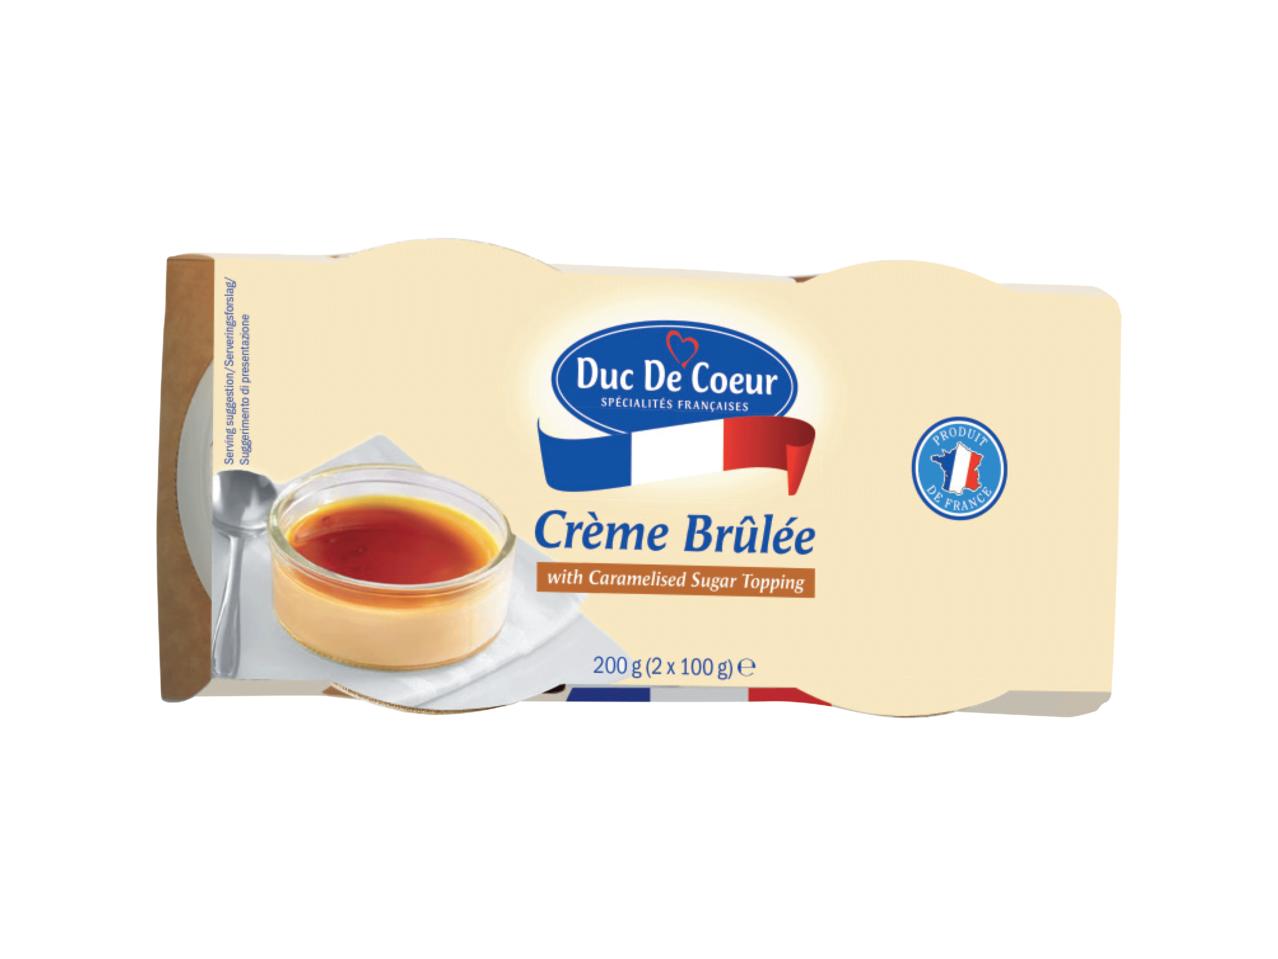 DELUXE Crème Brûlée